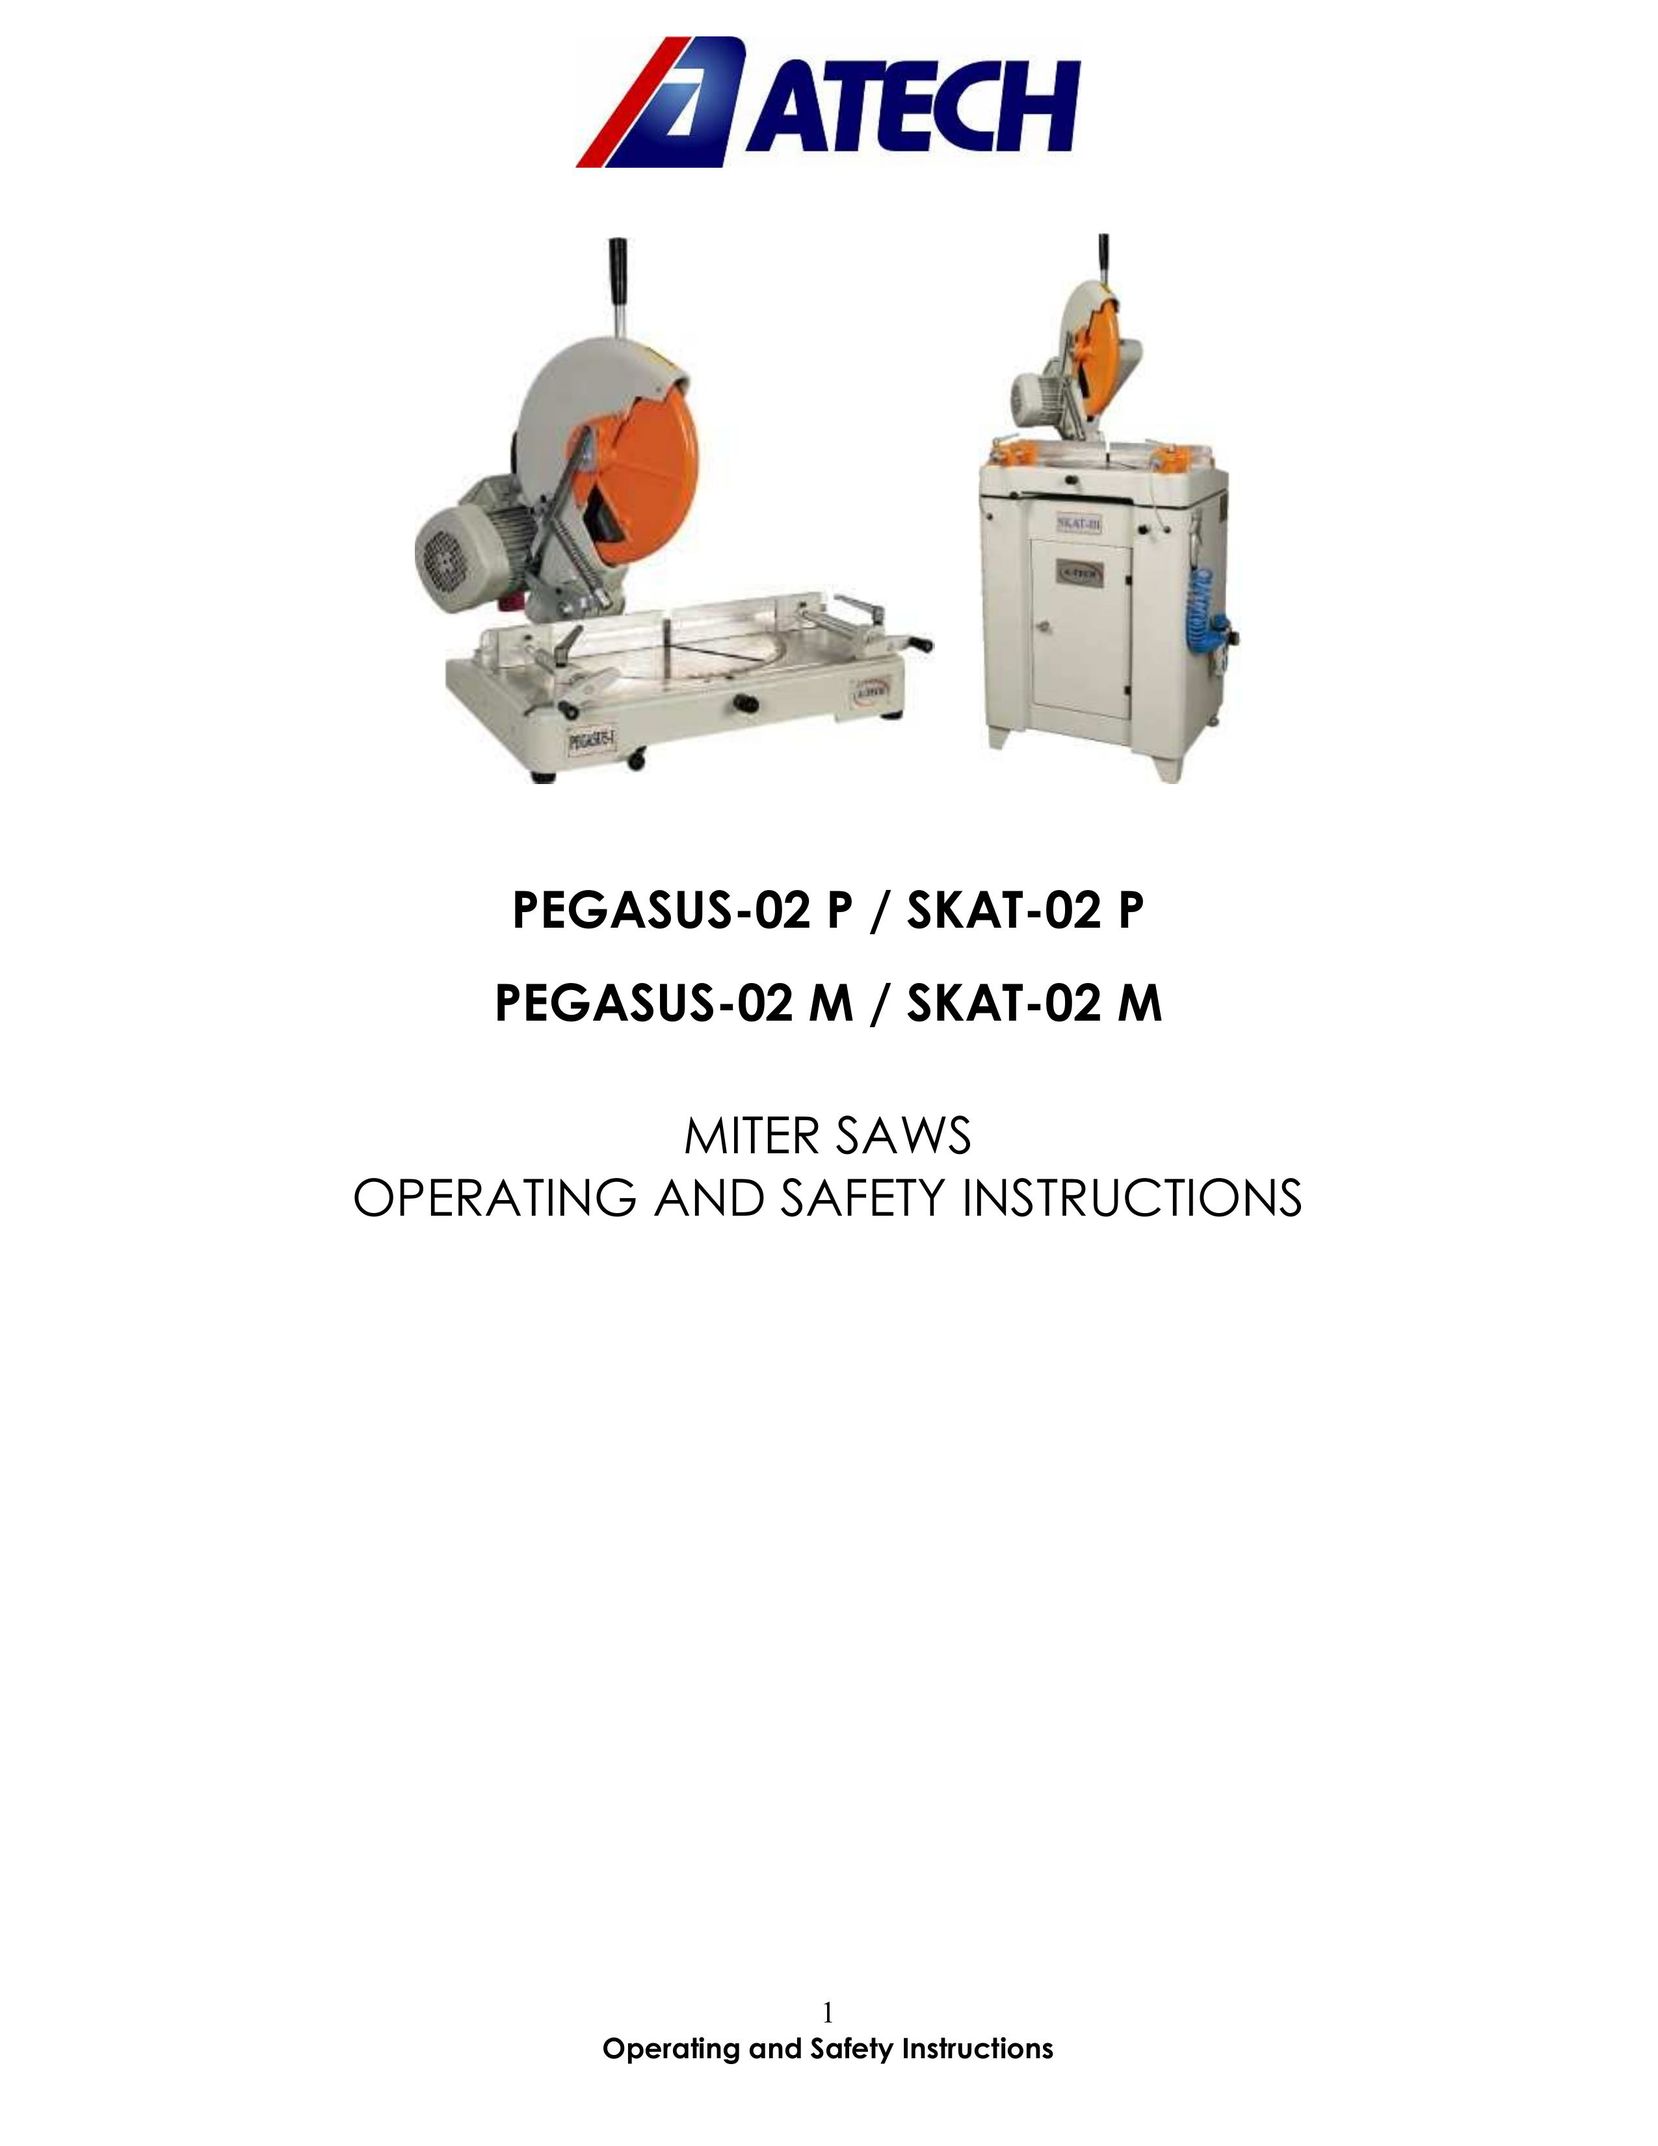 Atech Tech PEGASUS-02 M Saw User Manual